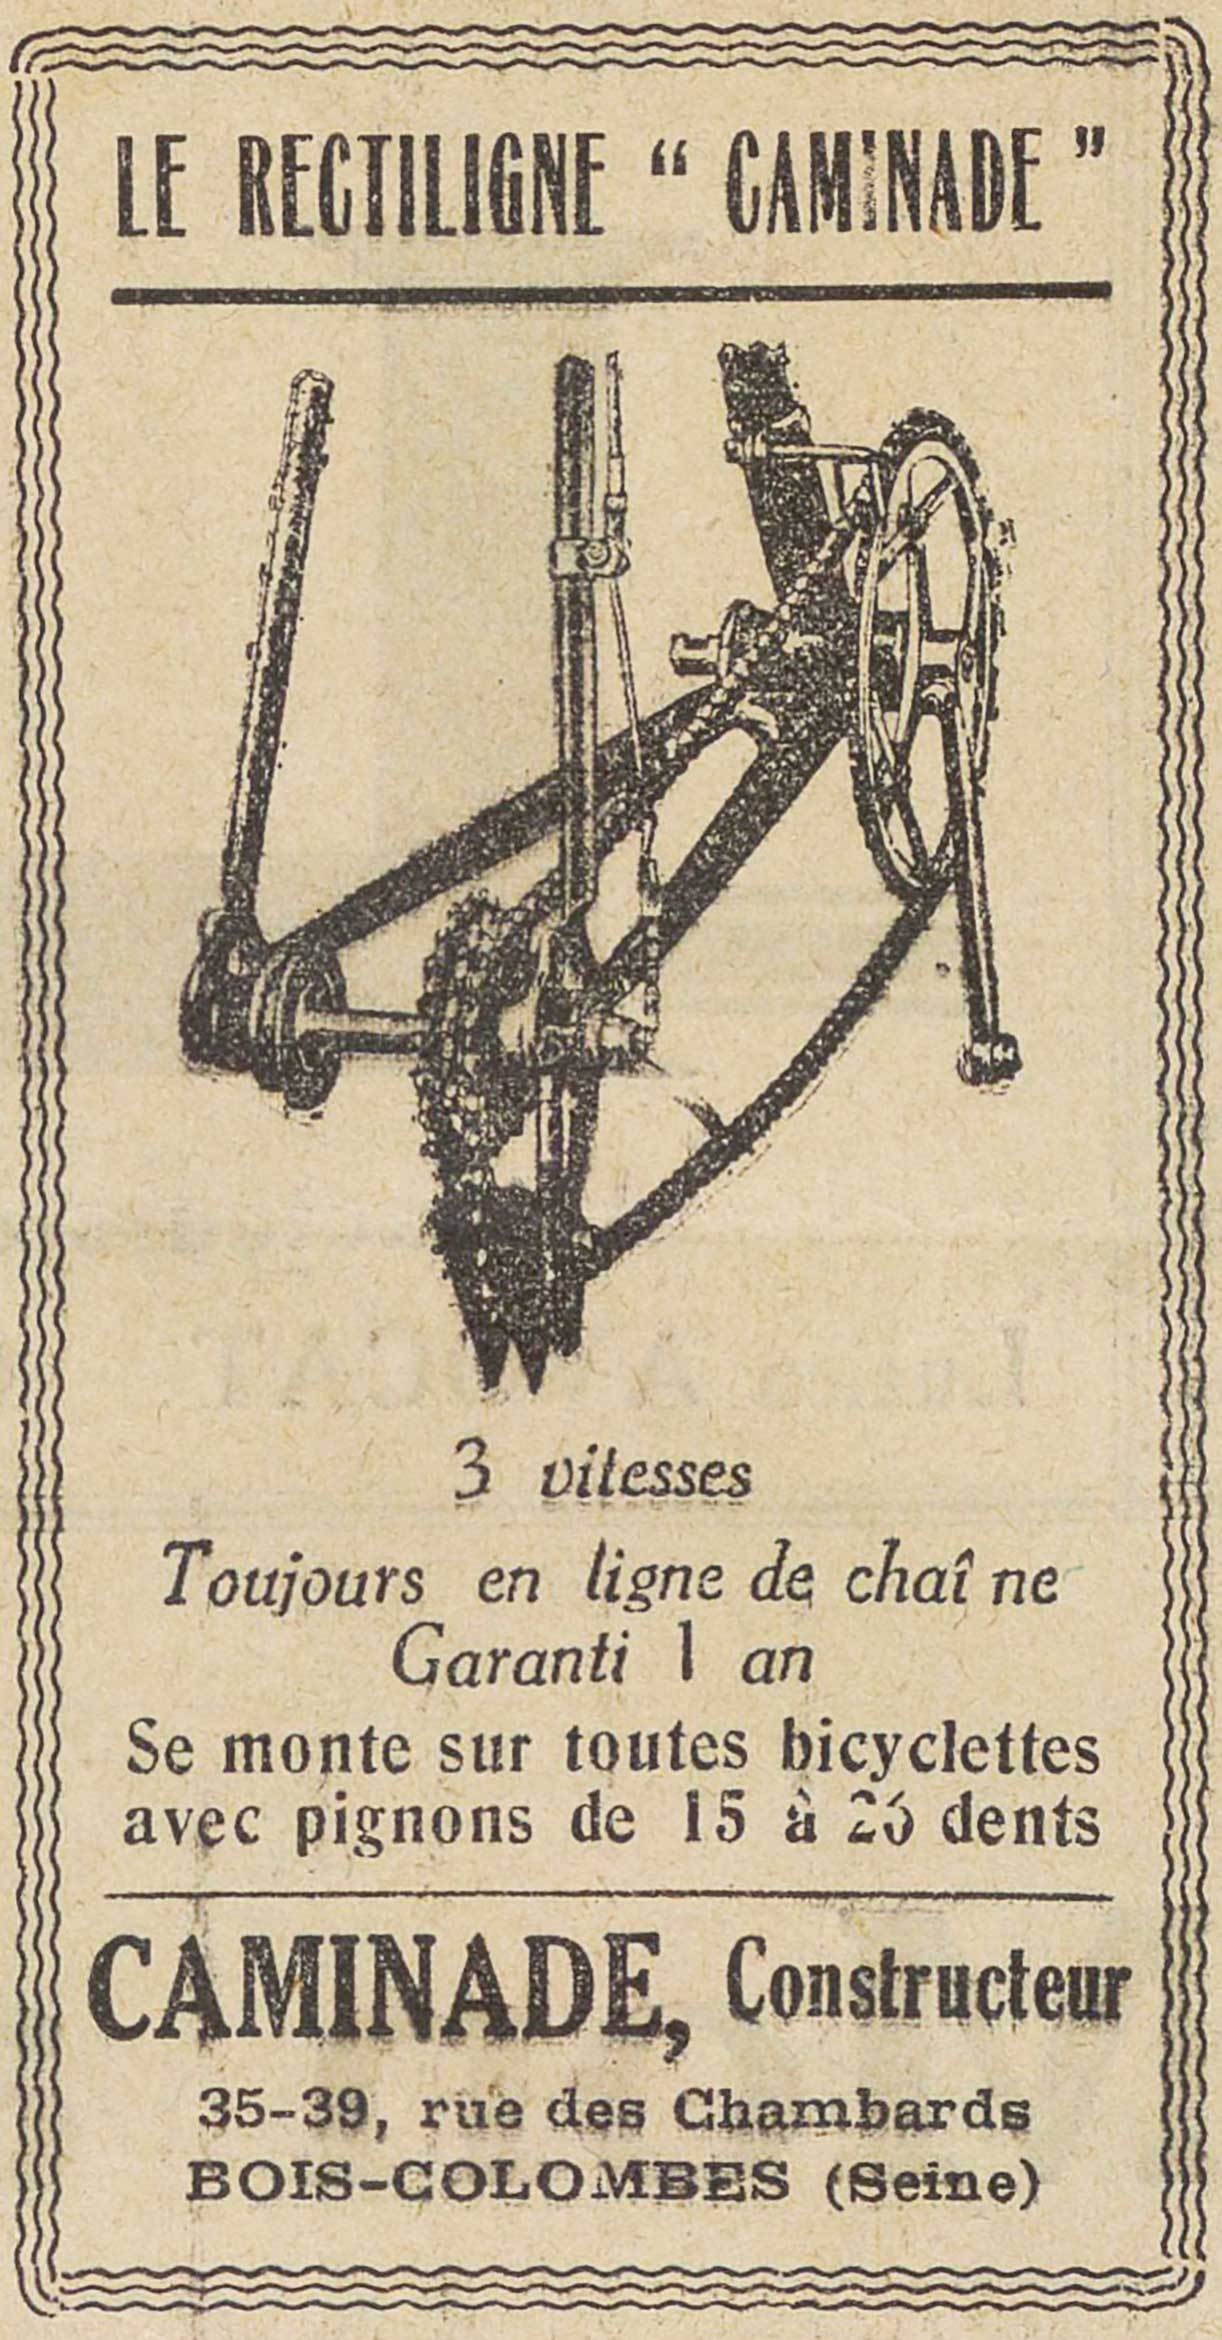 Le Velo Boxe 20th November 1934 - Caminade advert main image